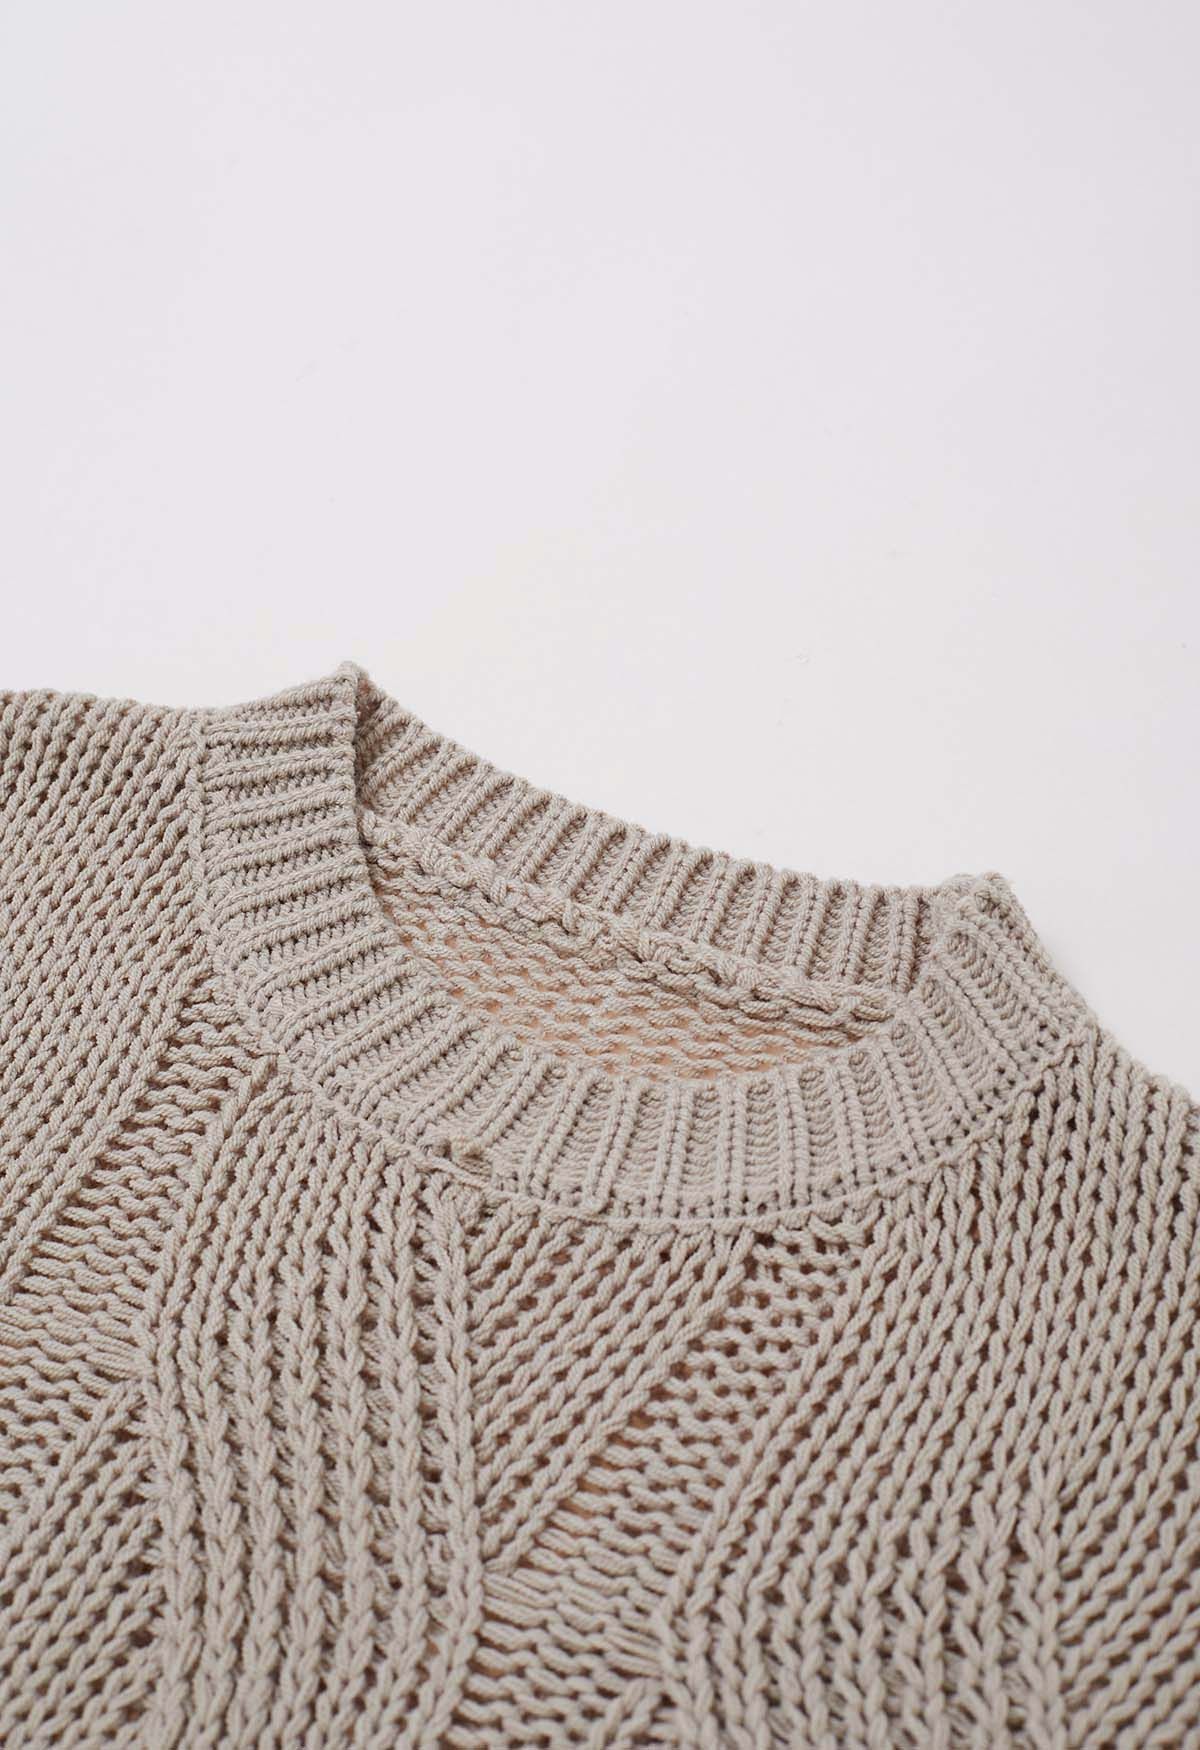 Suéter de punto trenzado Casual Elegance en color canela claro